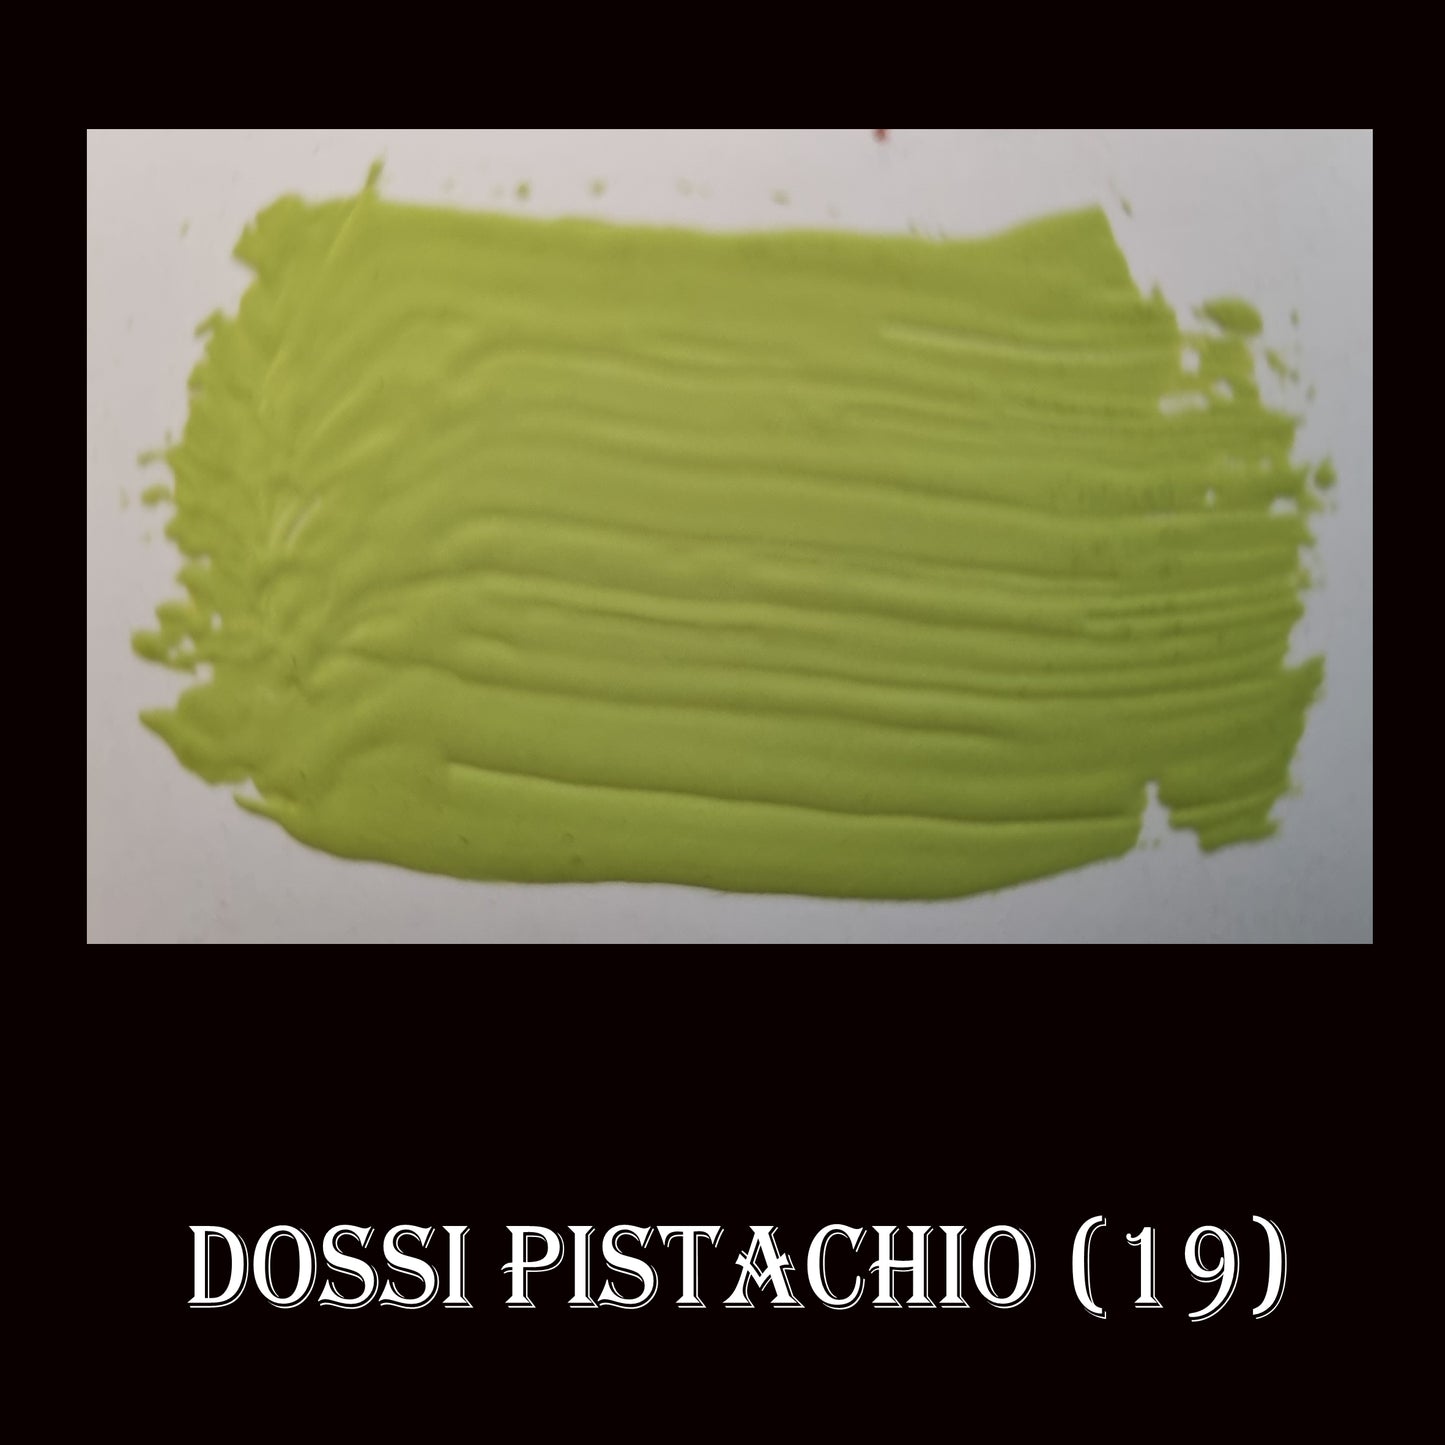 19 Chalky Finish Paint Dossi Pistachio - Da Vinci Chalk Paint & Rustic home decor